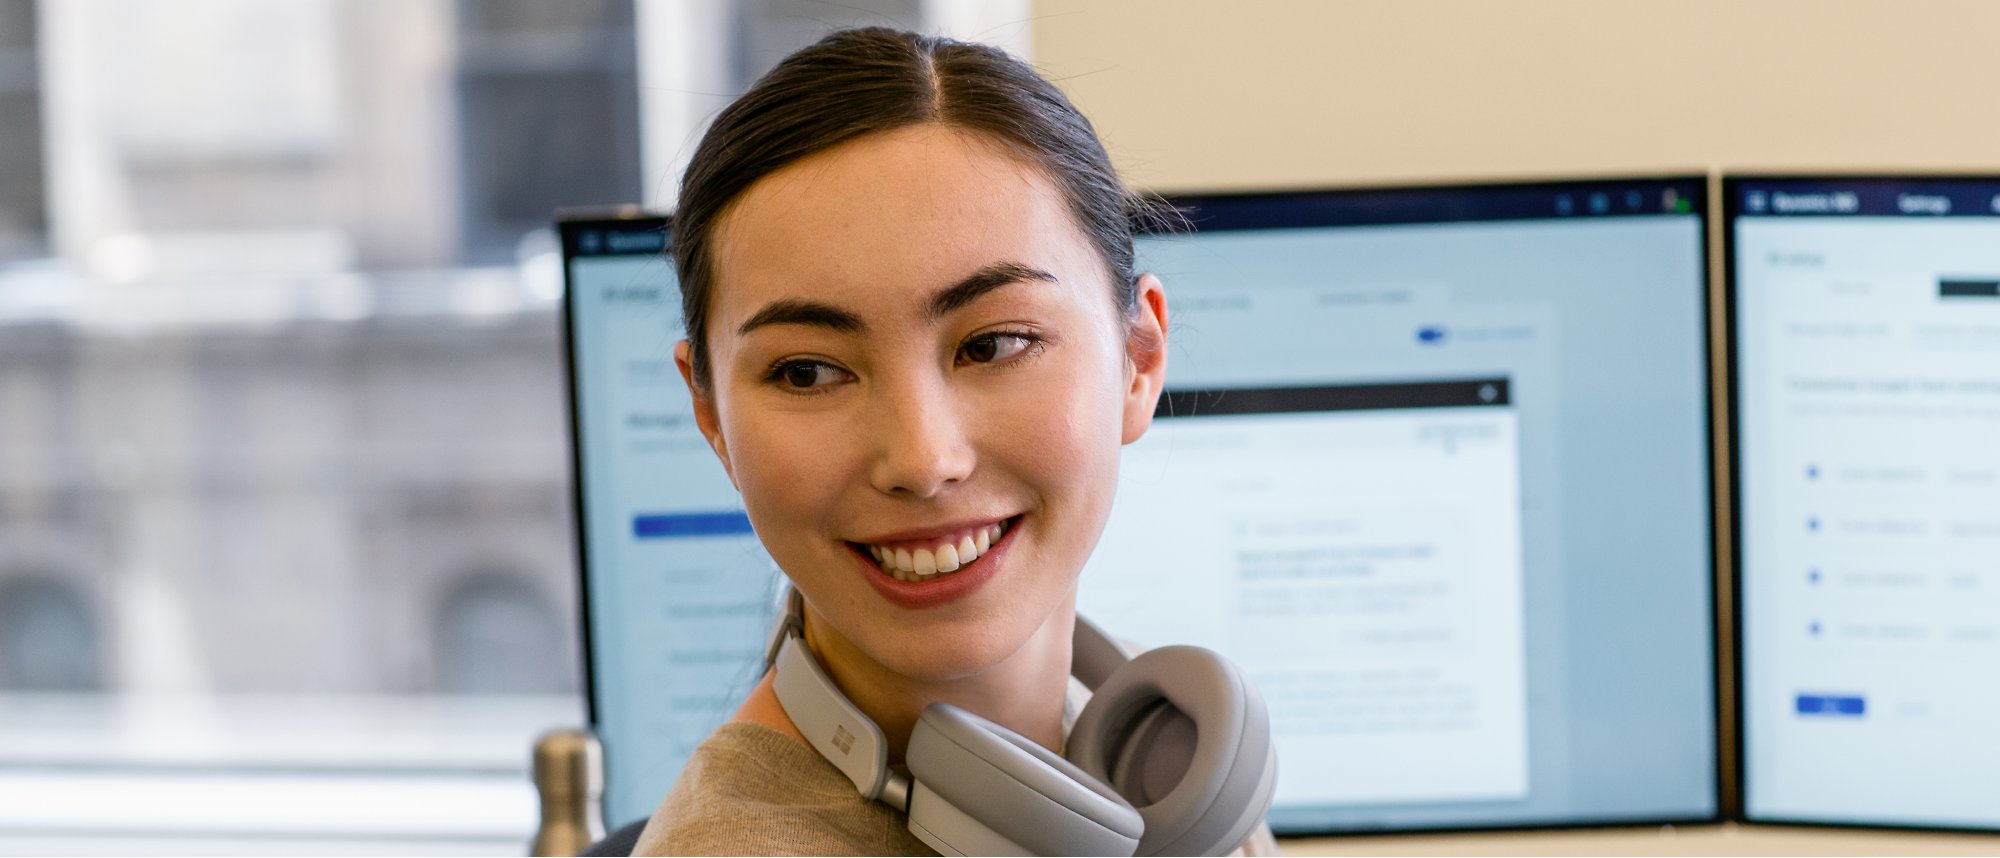 Μια γυναίκα τοποθετεί τα ακουστικά της πάνω από τον λαιμό της και χαμογελώντας ενώ εργάζεται σε δύο οθόνες.